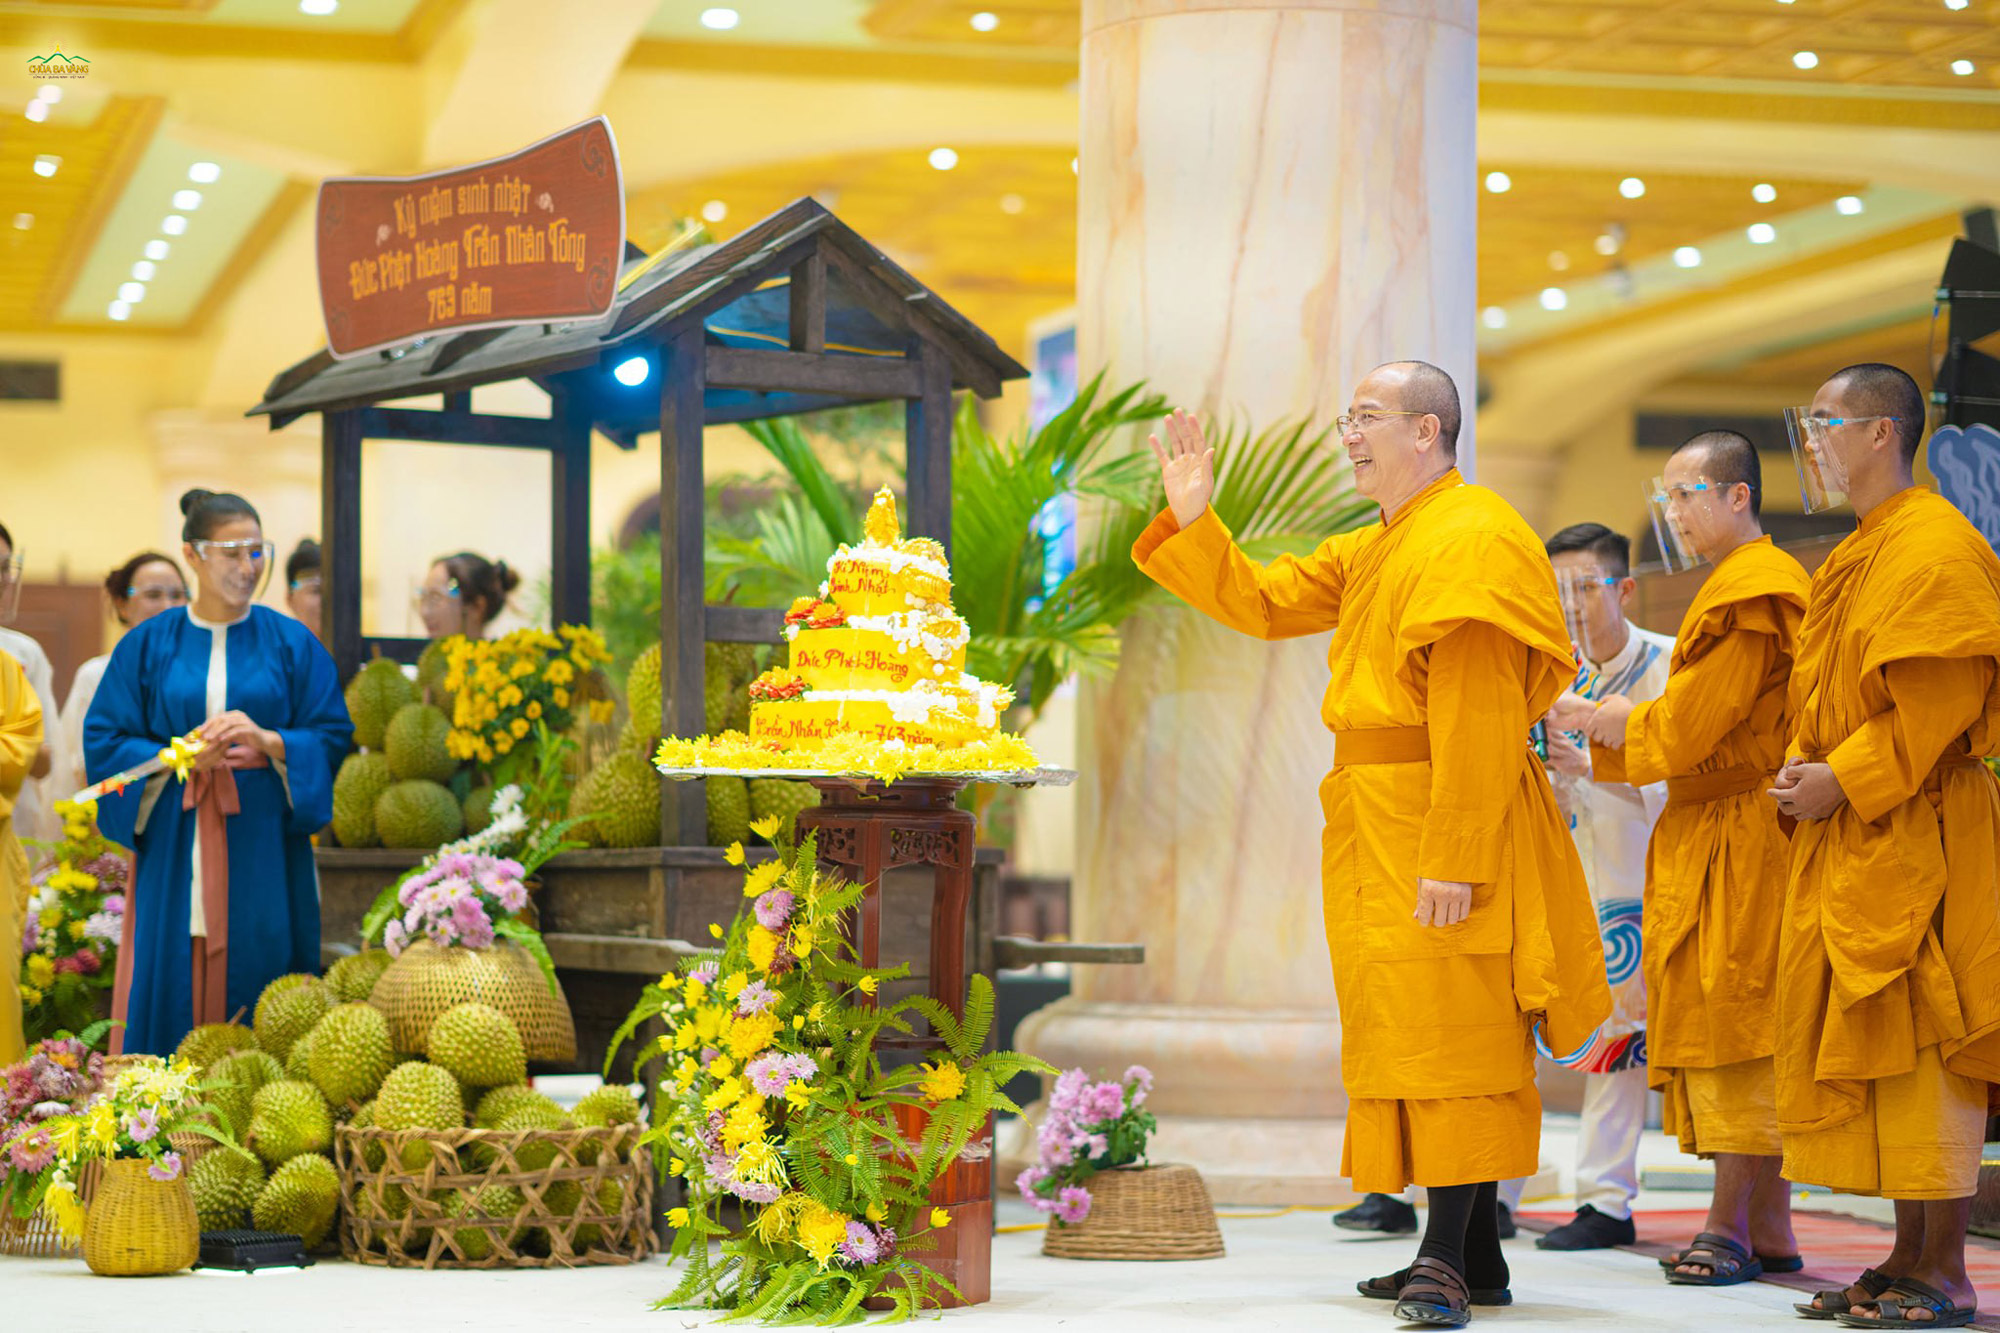   Sư Phụ Thích Trúc Thái Minh cùng chư Tăng hoan hỷ tham dự chương trình kỷ niệm ngày sinh Phật hoàng Trần Nhân Tông  